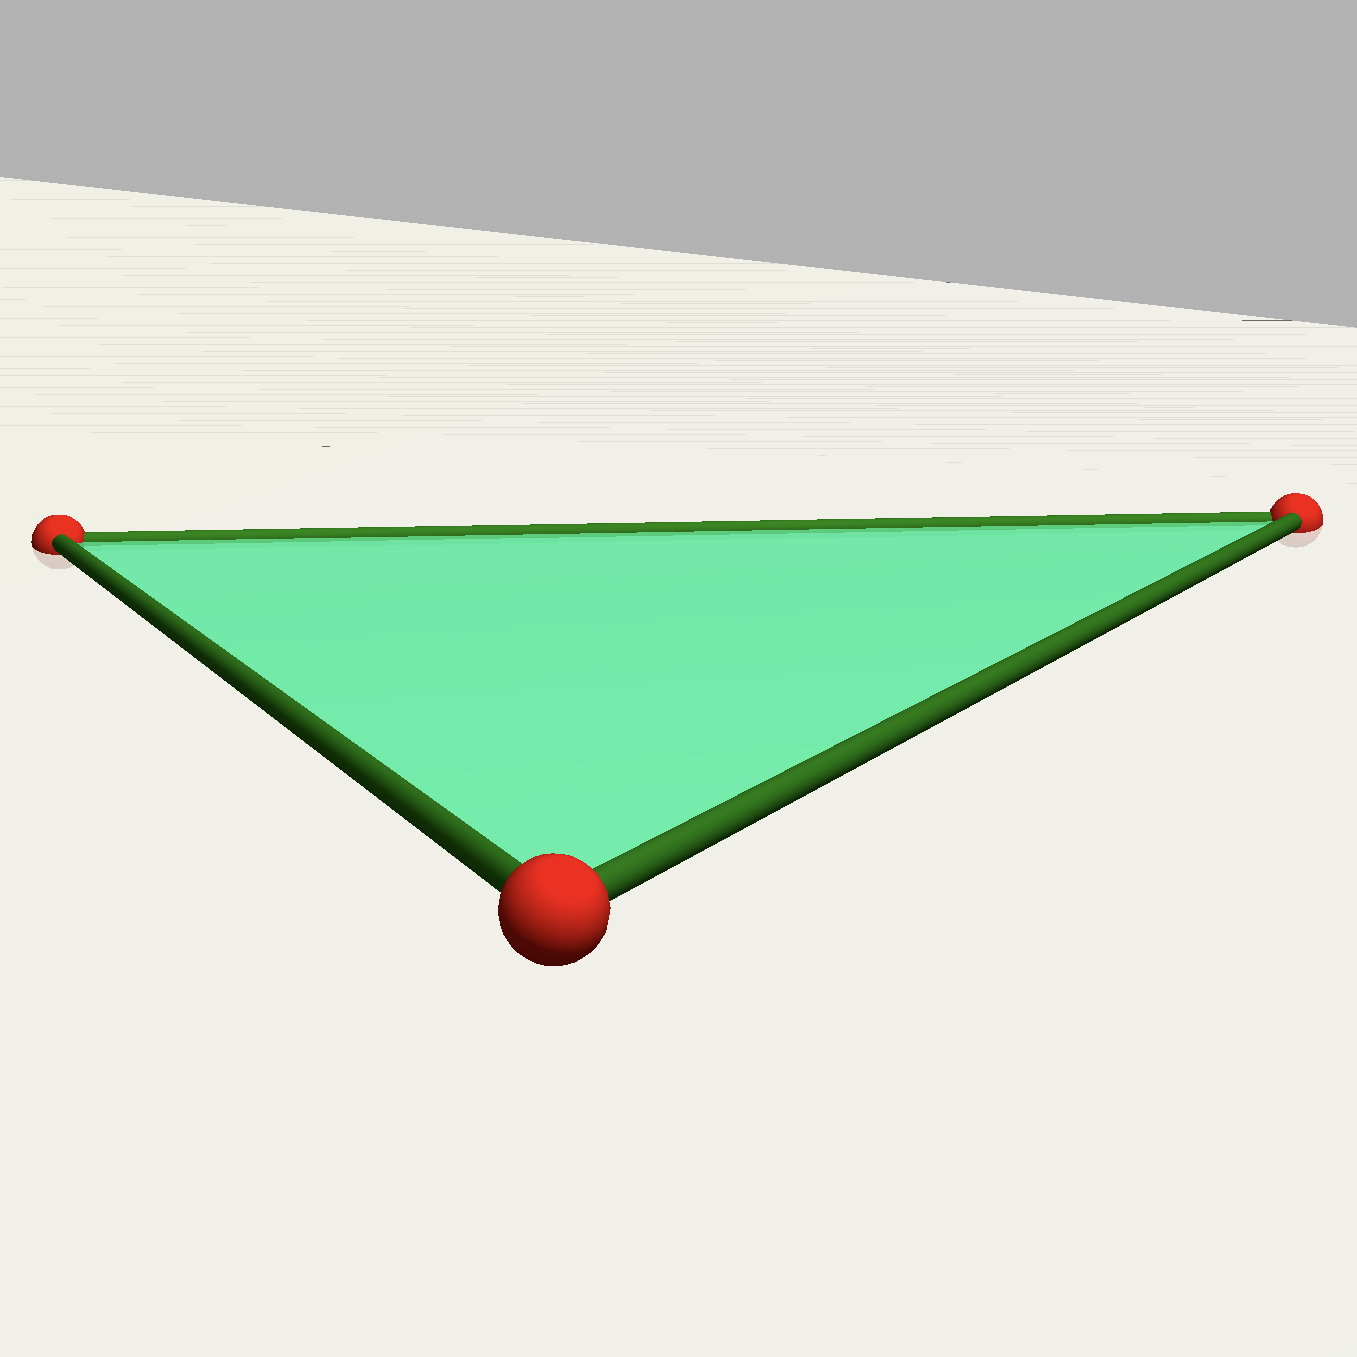 A triangle.